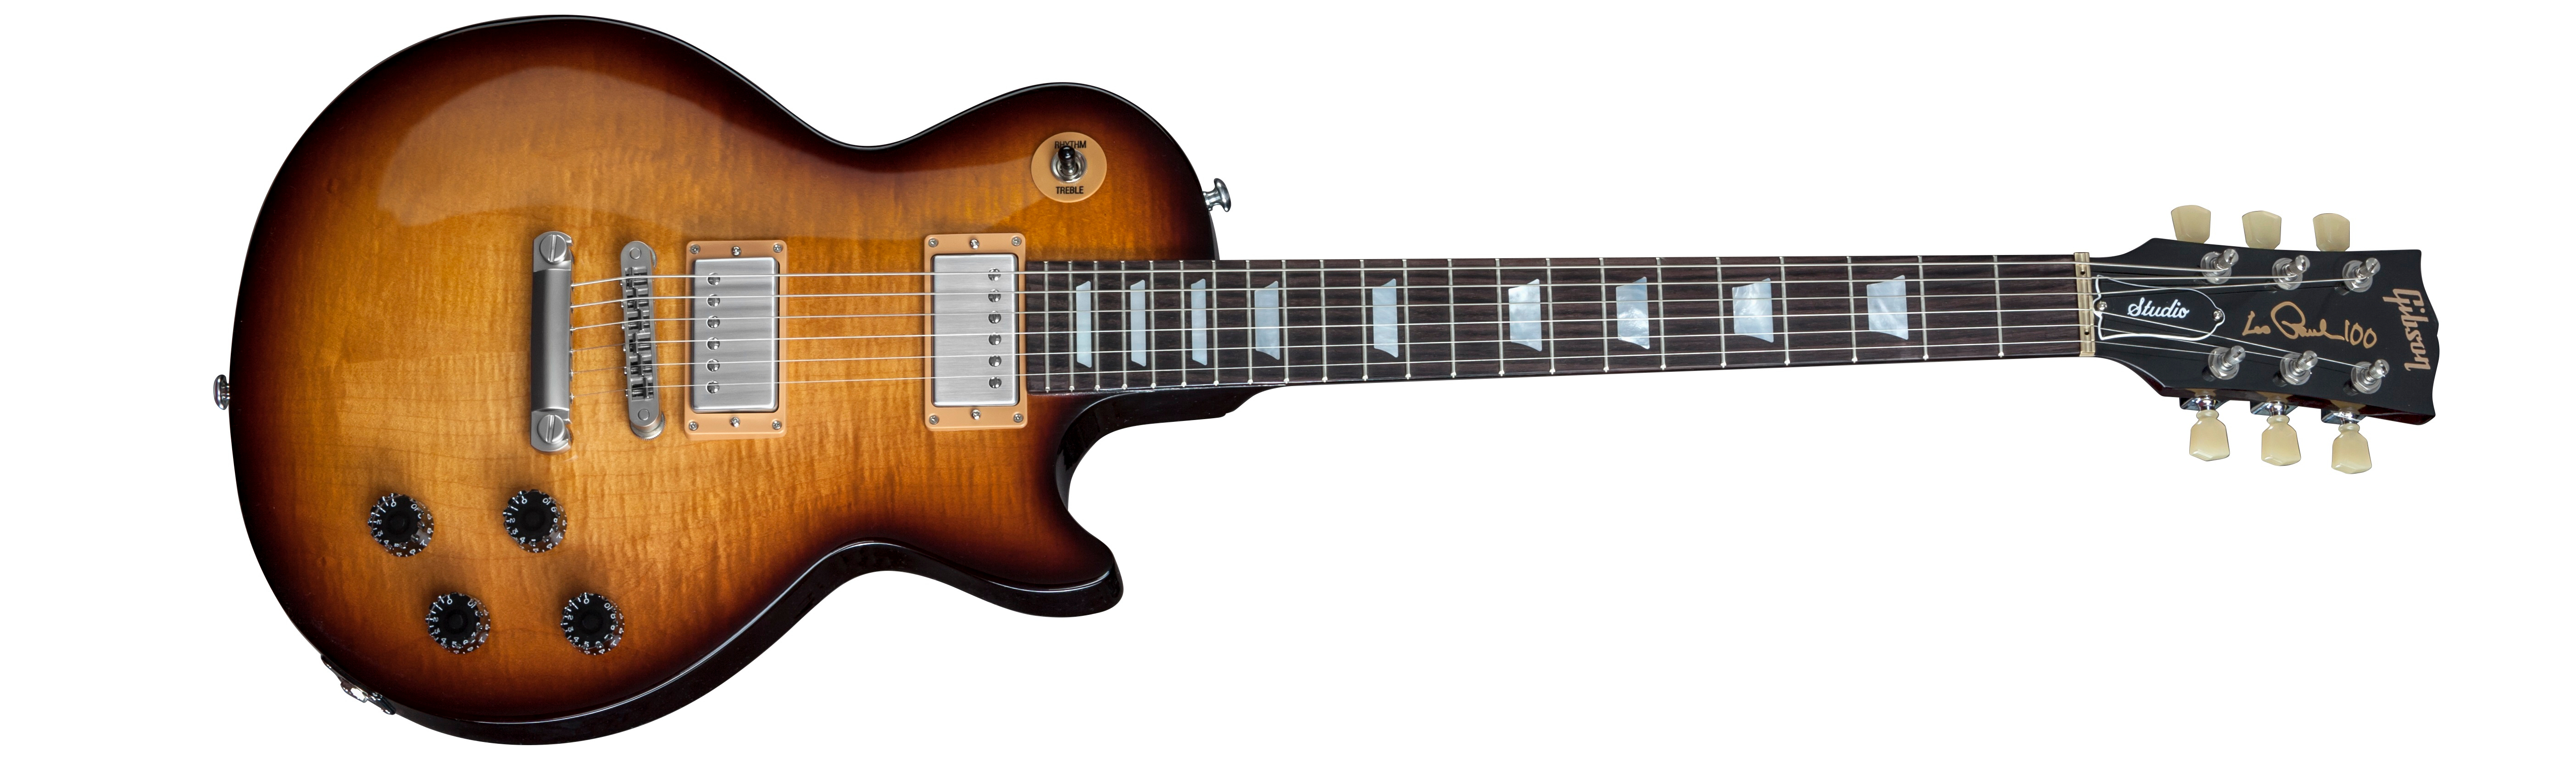 Gibson Les Paul Studio 2015 DB Desert Burst | MUSIC STORE professional